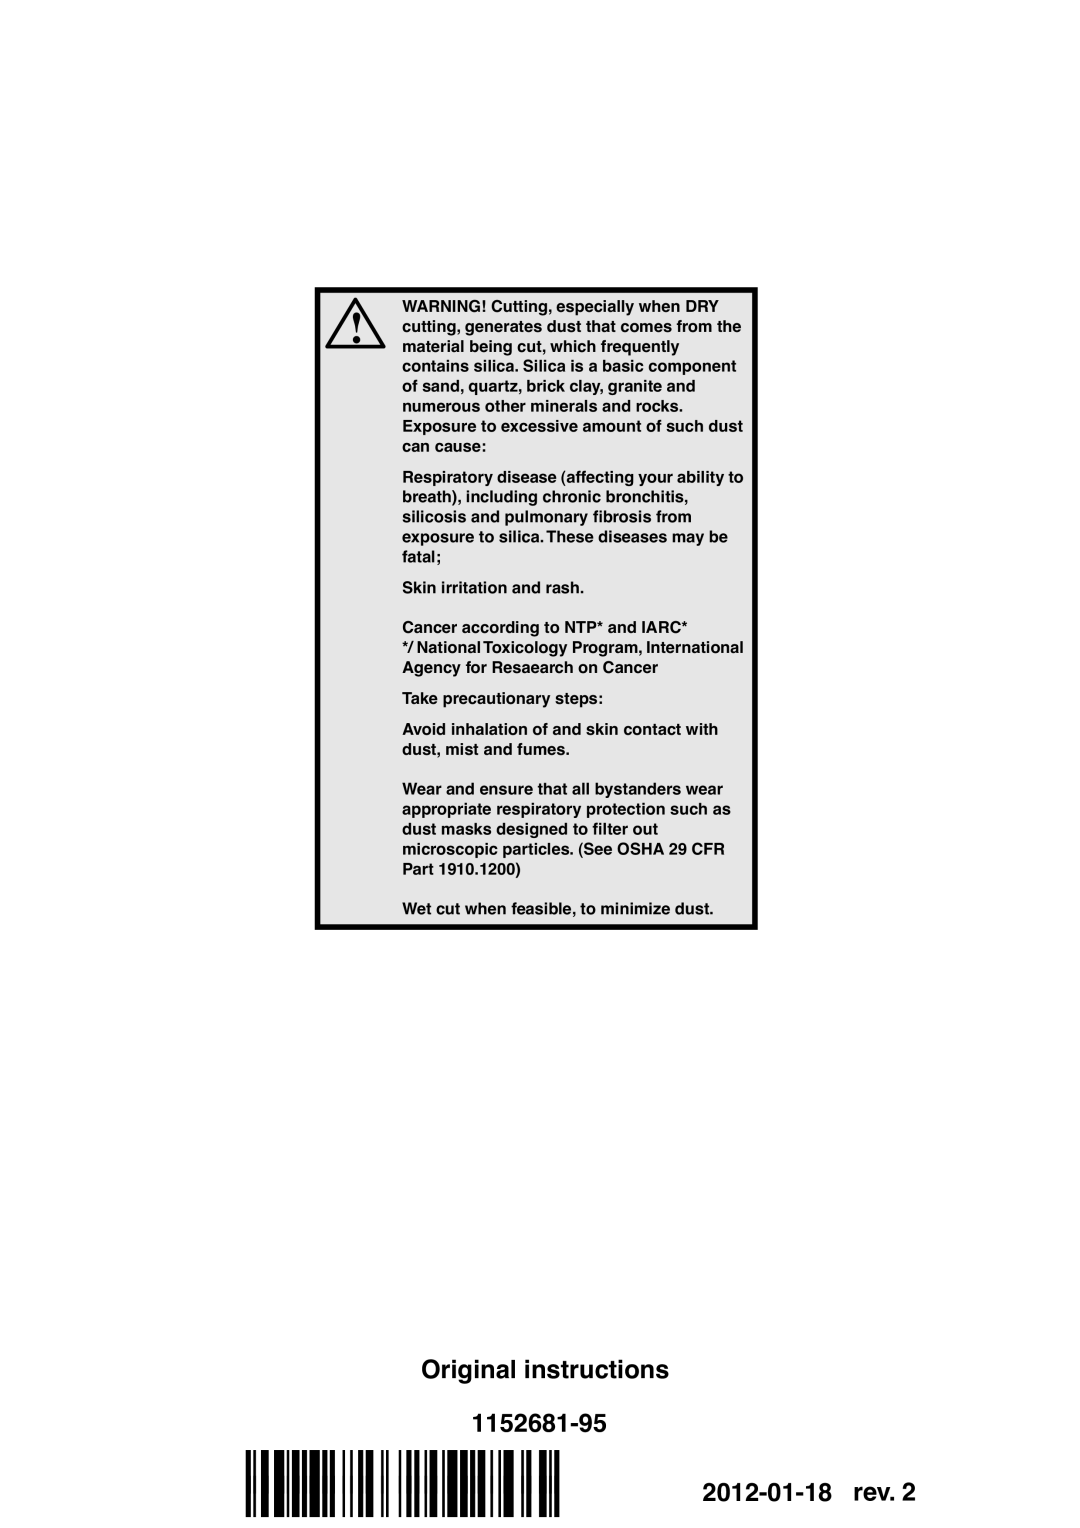 Husqvarna K970 manual Original instructions 1152681-95, 2012-01-18 rev 